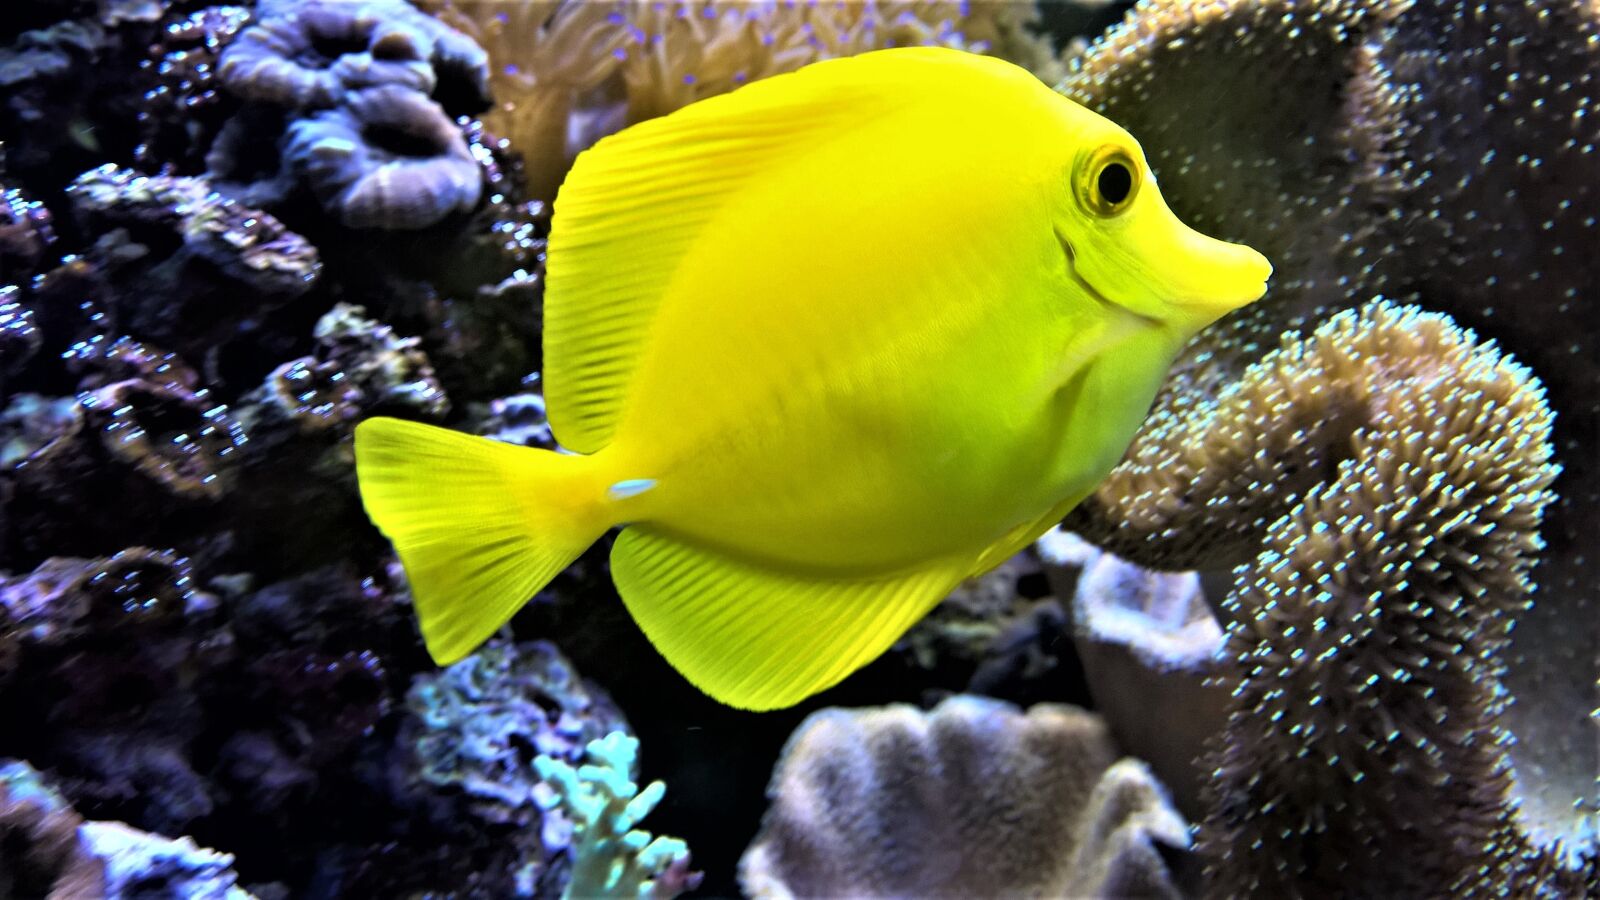 Nokia Lumia 1520 sample photo. Fish, aquarium, bright photography